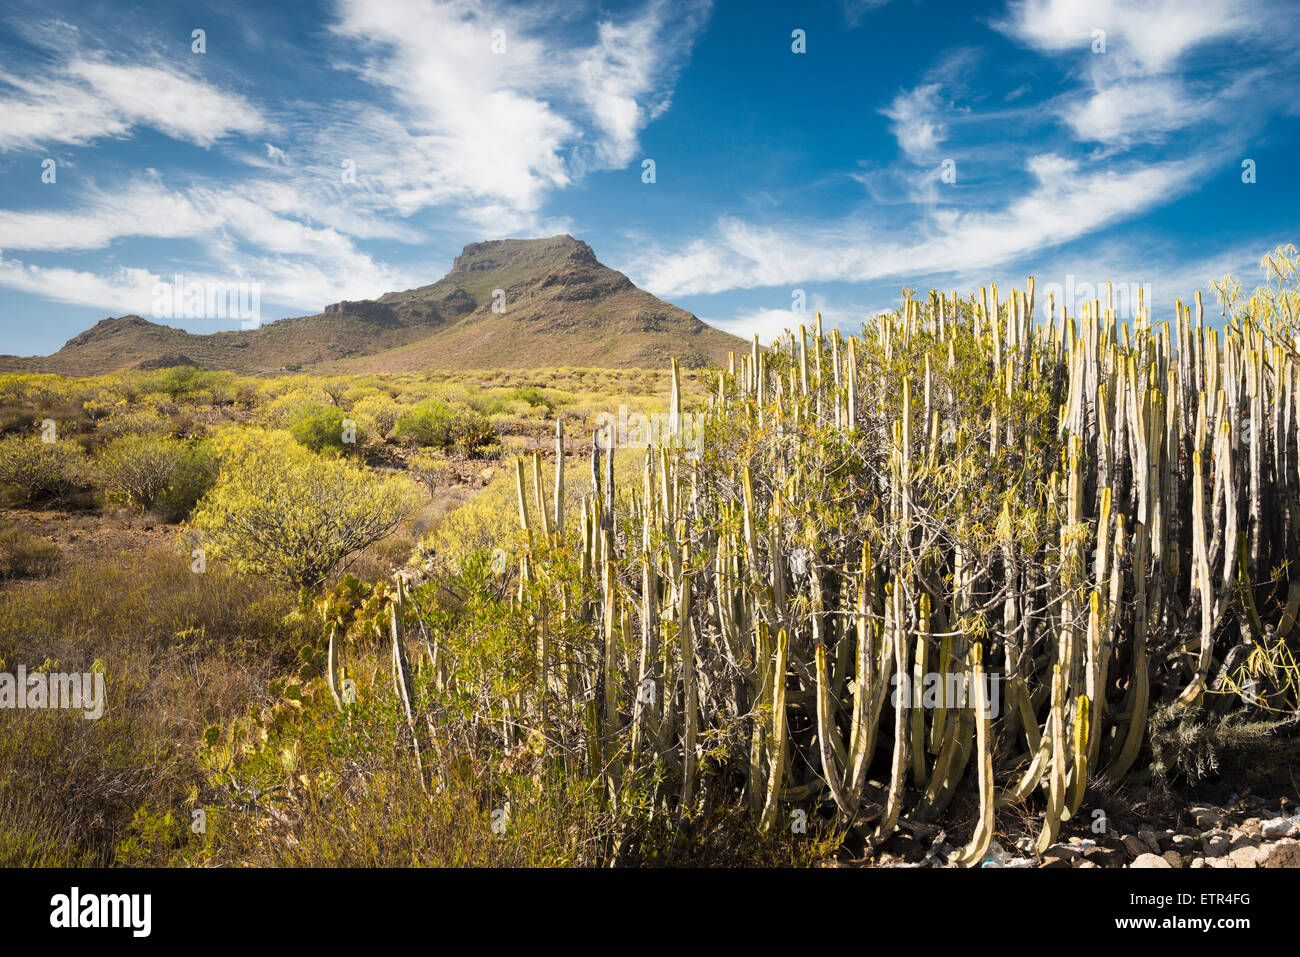 La leggendaria Montagna di Roque del Conde nel sud di Tenerife, con flora tipica di questa regione semi-arida in primo piano Foto Stock